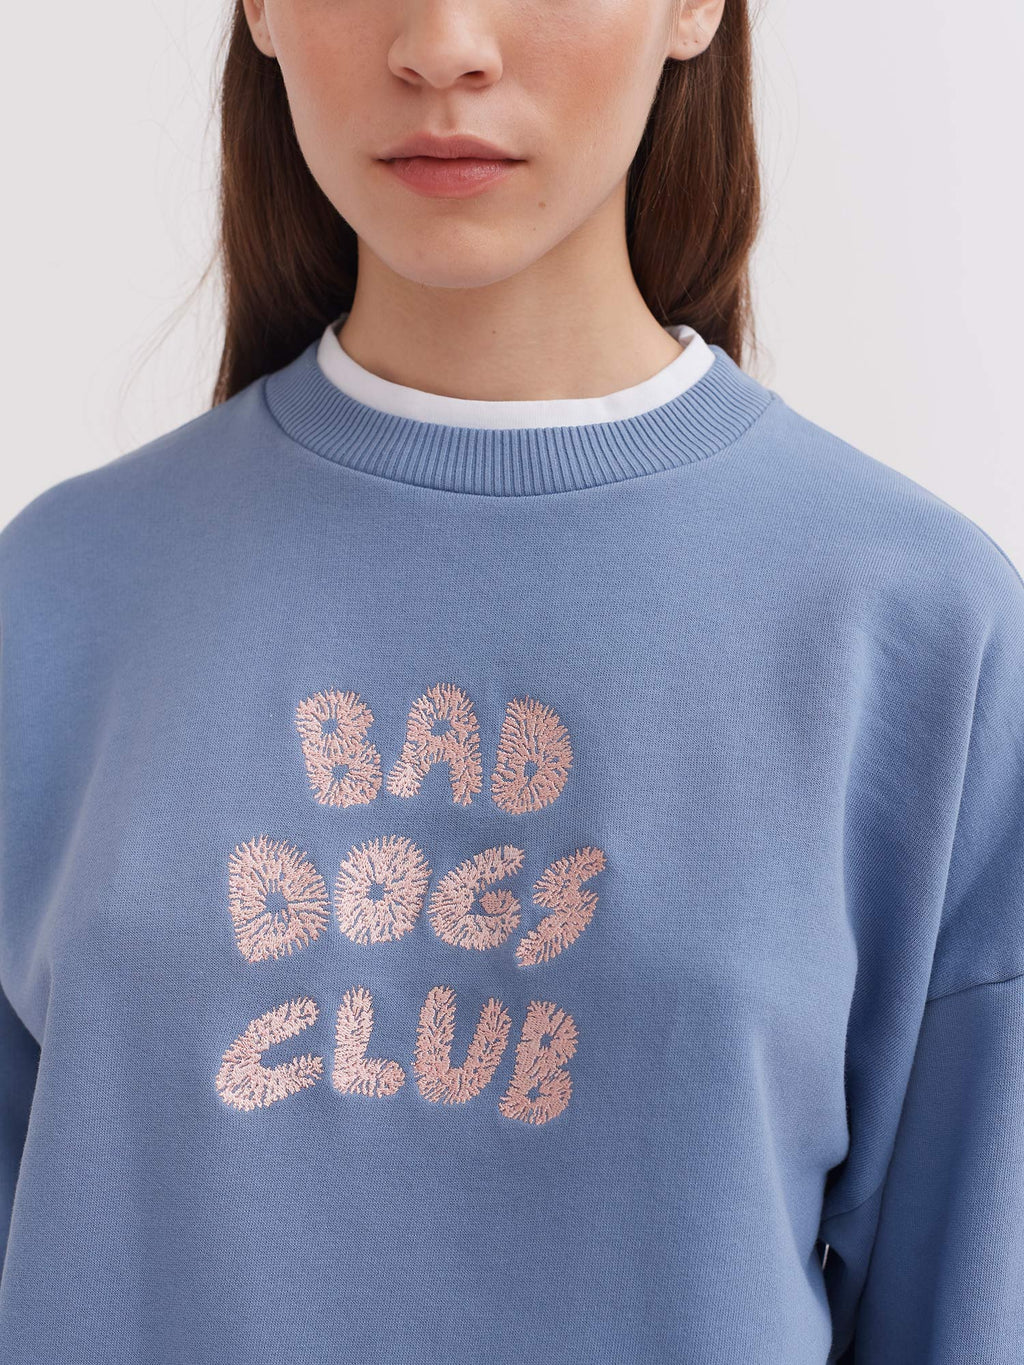 Lazy Oaf Bad Dogs Club Sweatshirt